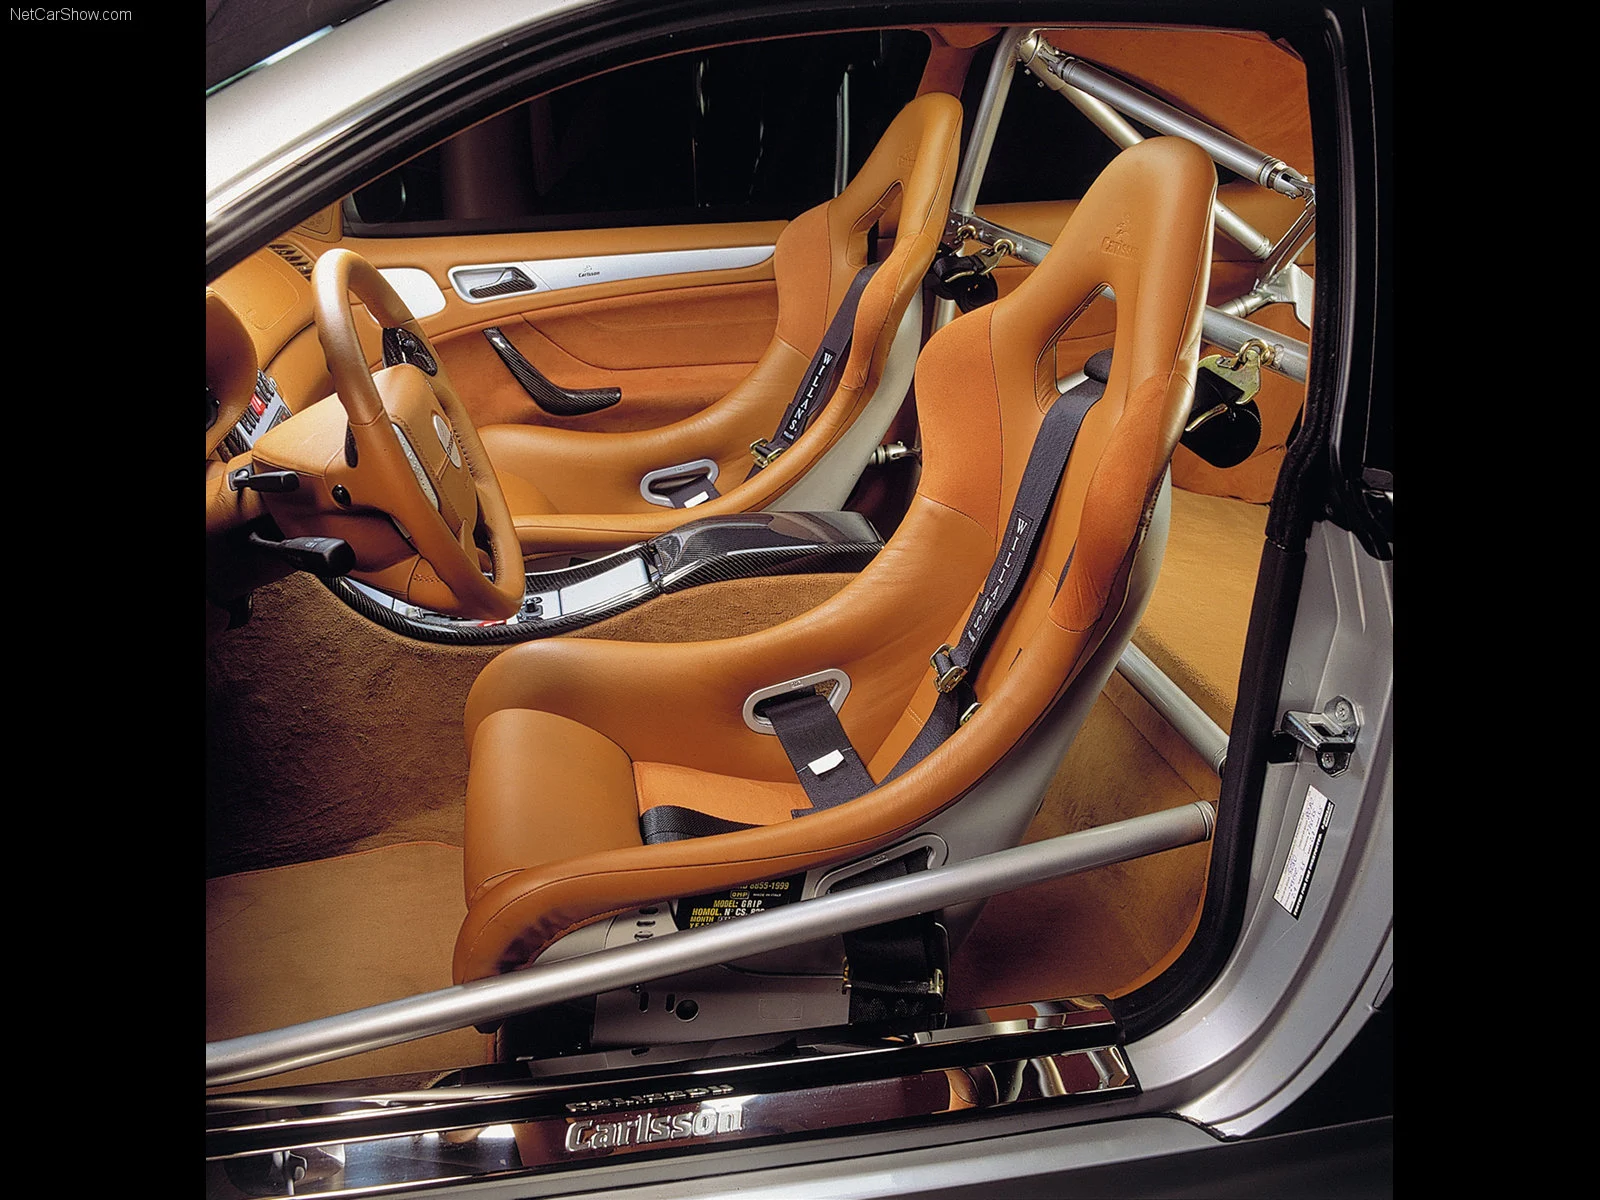 Hình ảnh xe ô tô Carlsson Mercedes-Benz CLK 1998 & nội ngoại thất